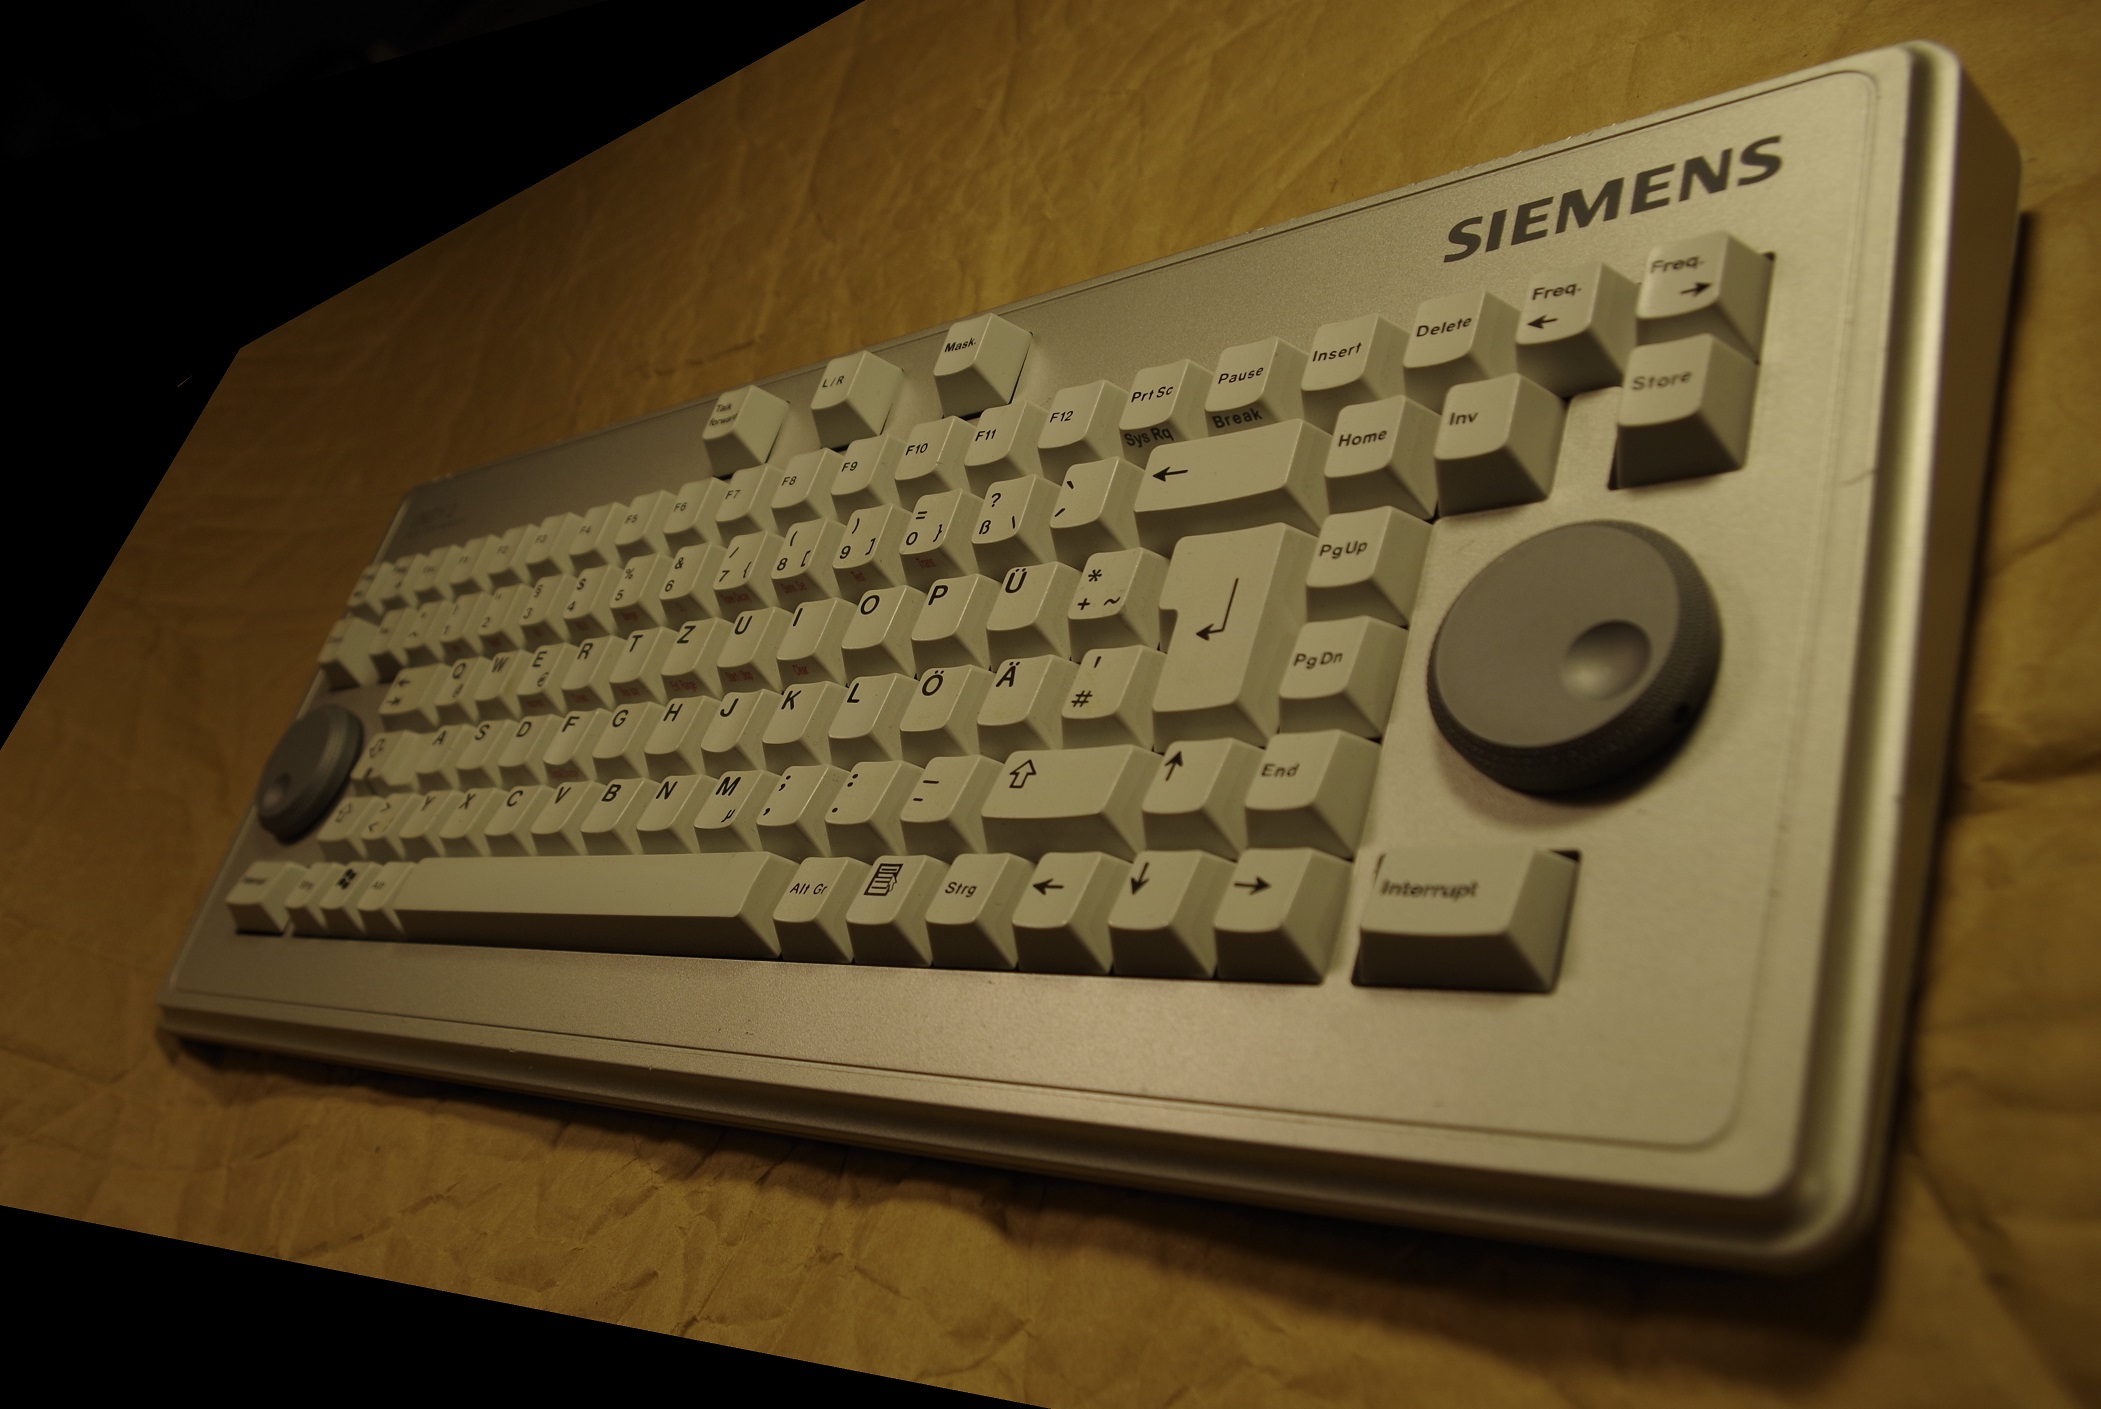 Siemens audiology keyboard.jpg